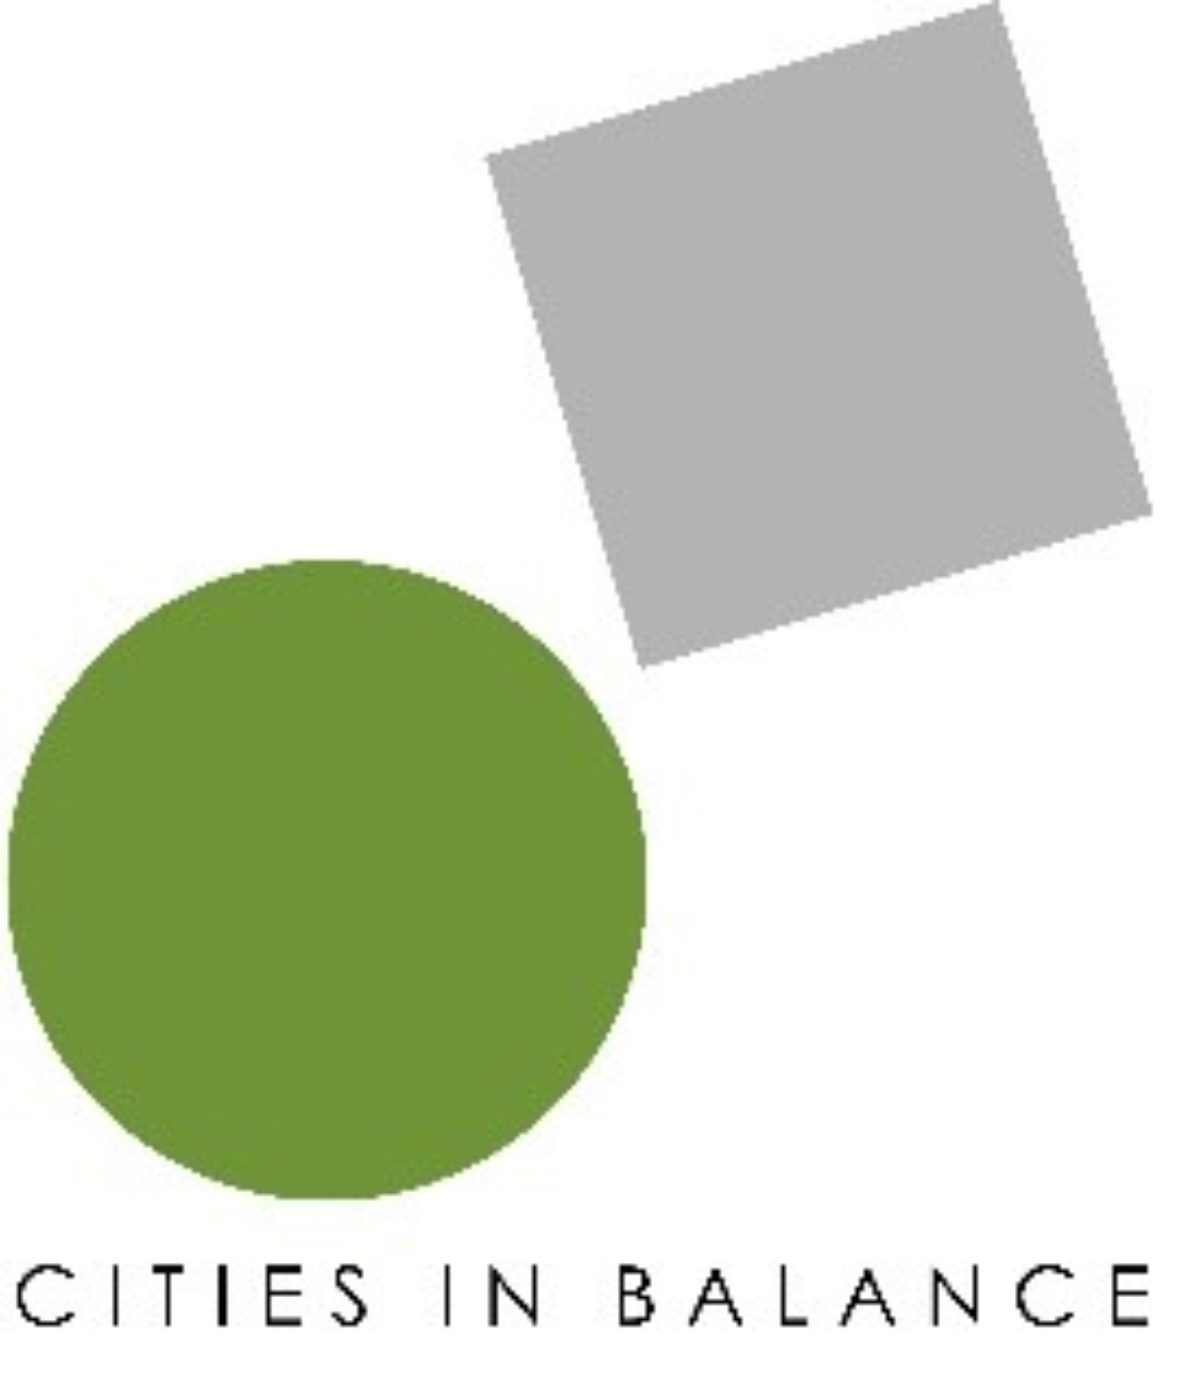 Πρώτη Διεπιστημονική Συνάντηση Cities in Balance: “Μνήμη και Λήθη στον Δημόσιο χώρο”, 23-26 Αυγούστου 2019, Αλέξανδρος Λευκάδας